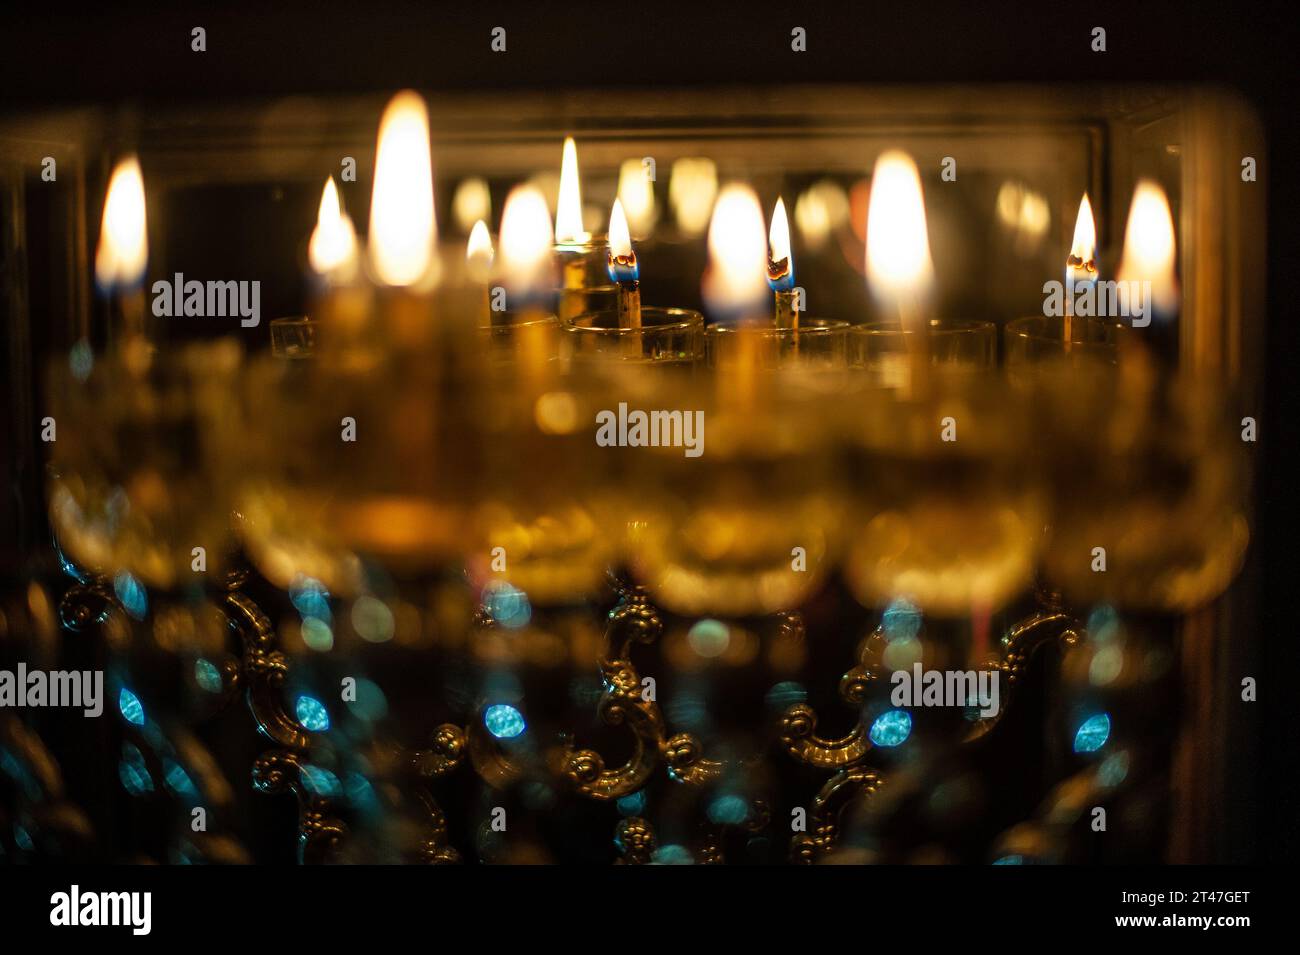 Le fiale di vetro contengono olio e stoppini brucianti in una menorah luminosa a Gerusalemme l'ottava notte della festa ebraica di Hanukkah Foto Stock